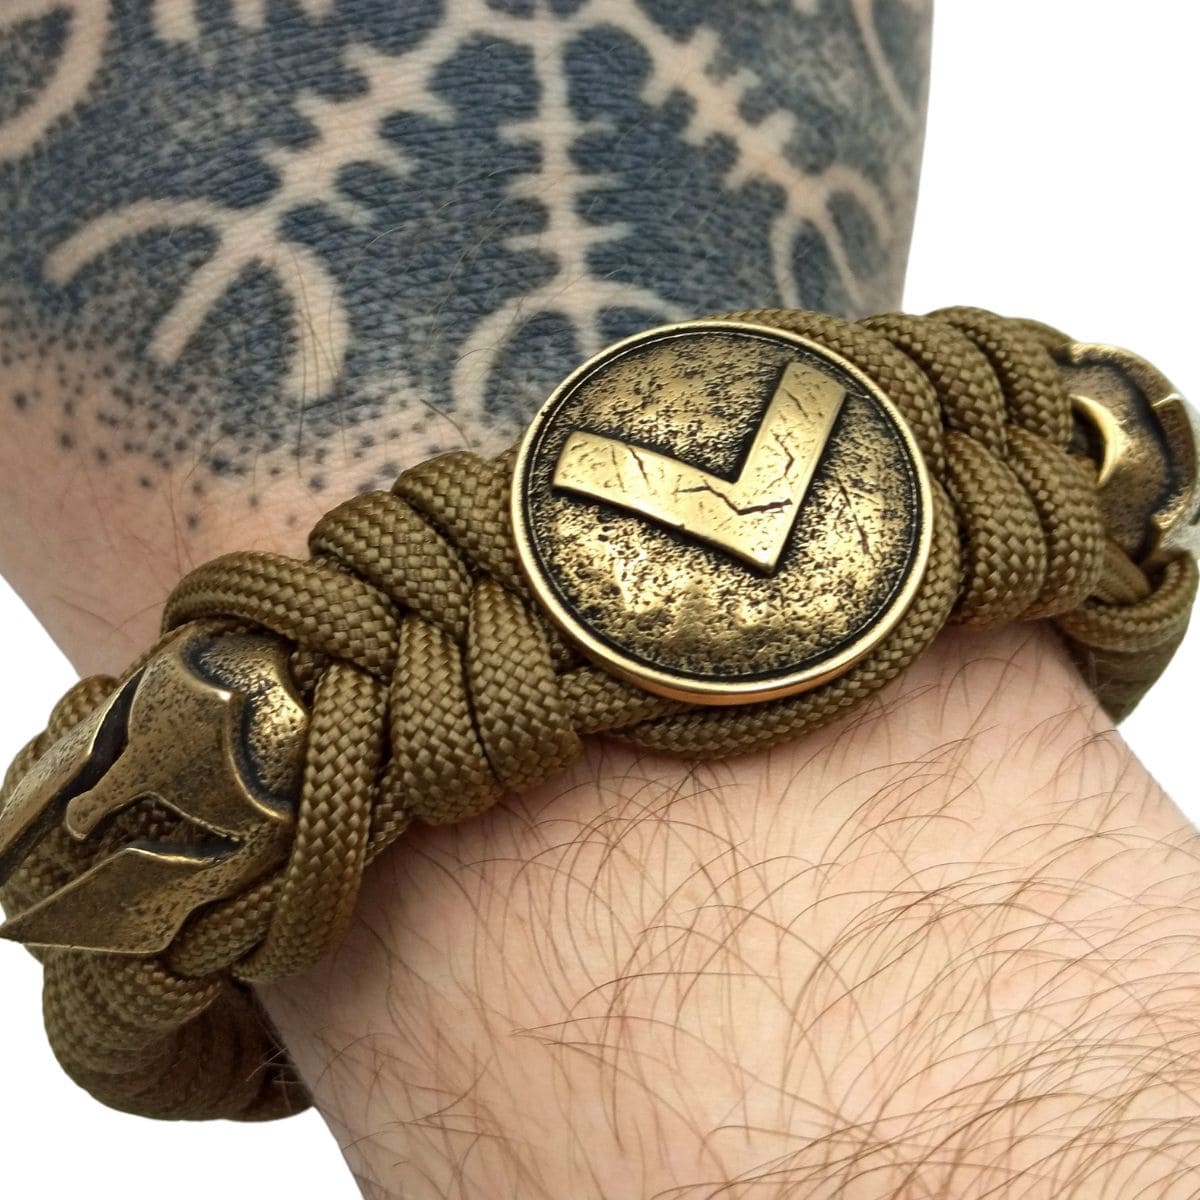 Spartan paracord bracelet for men